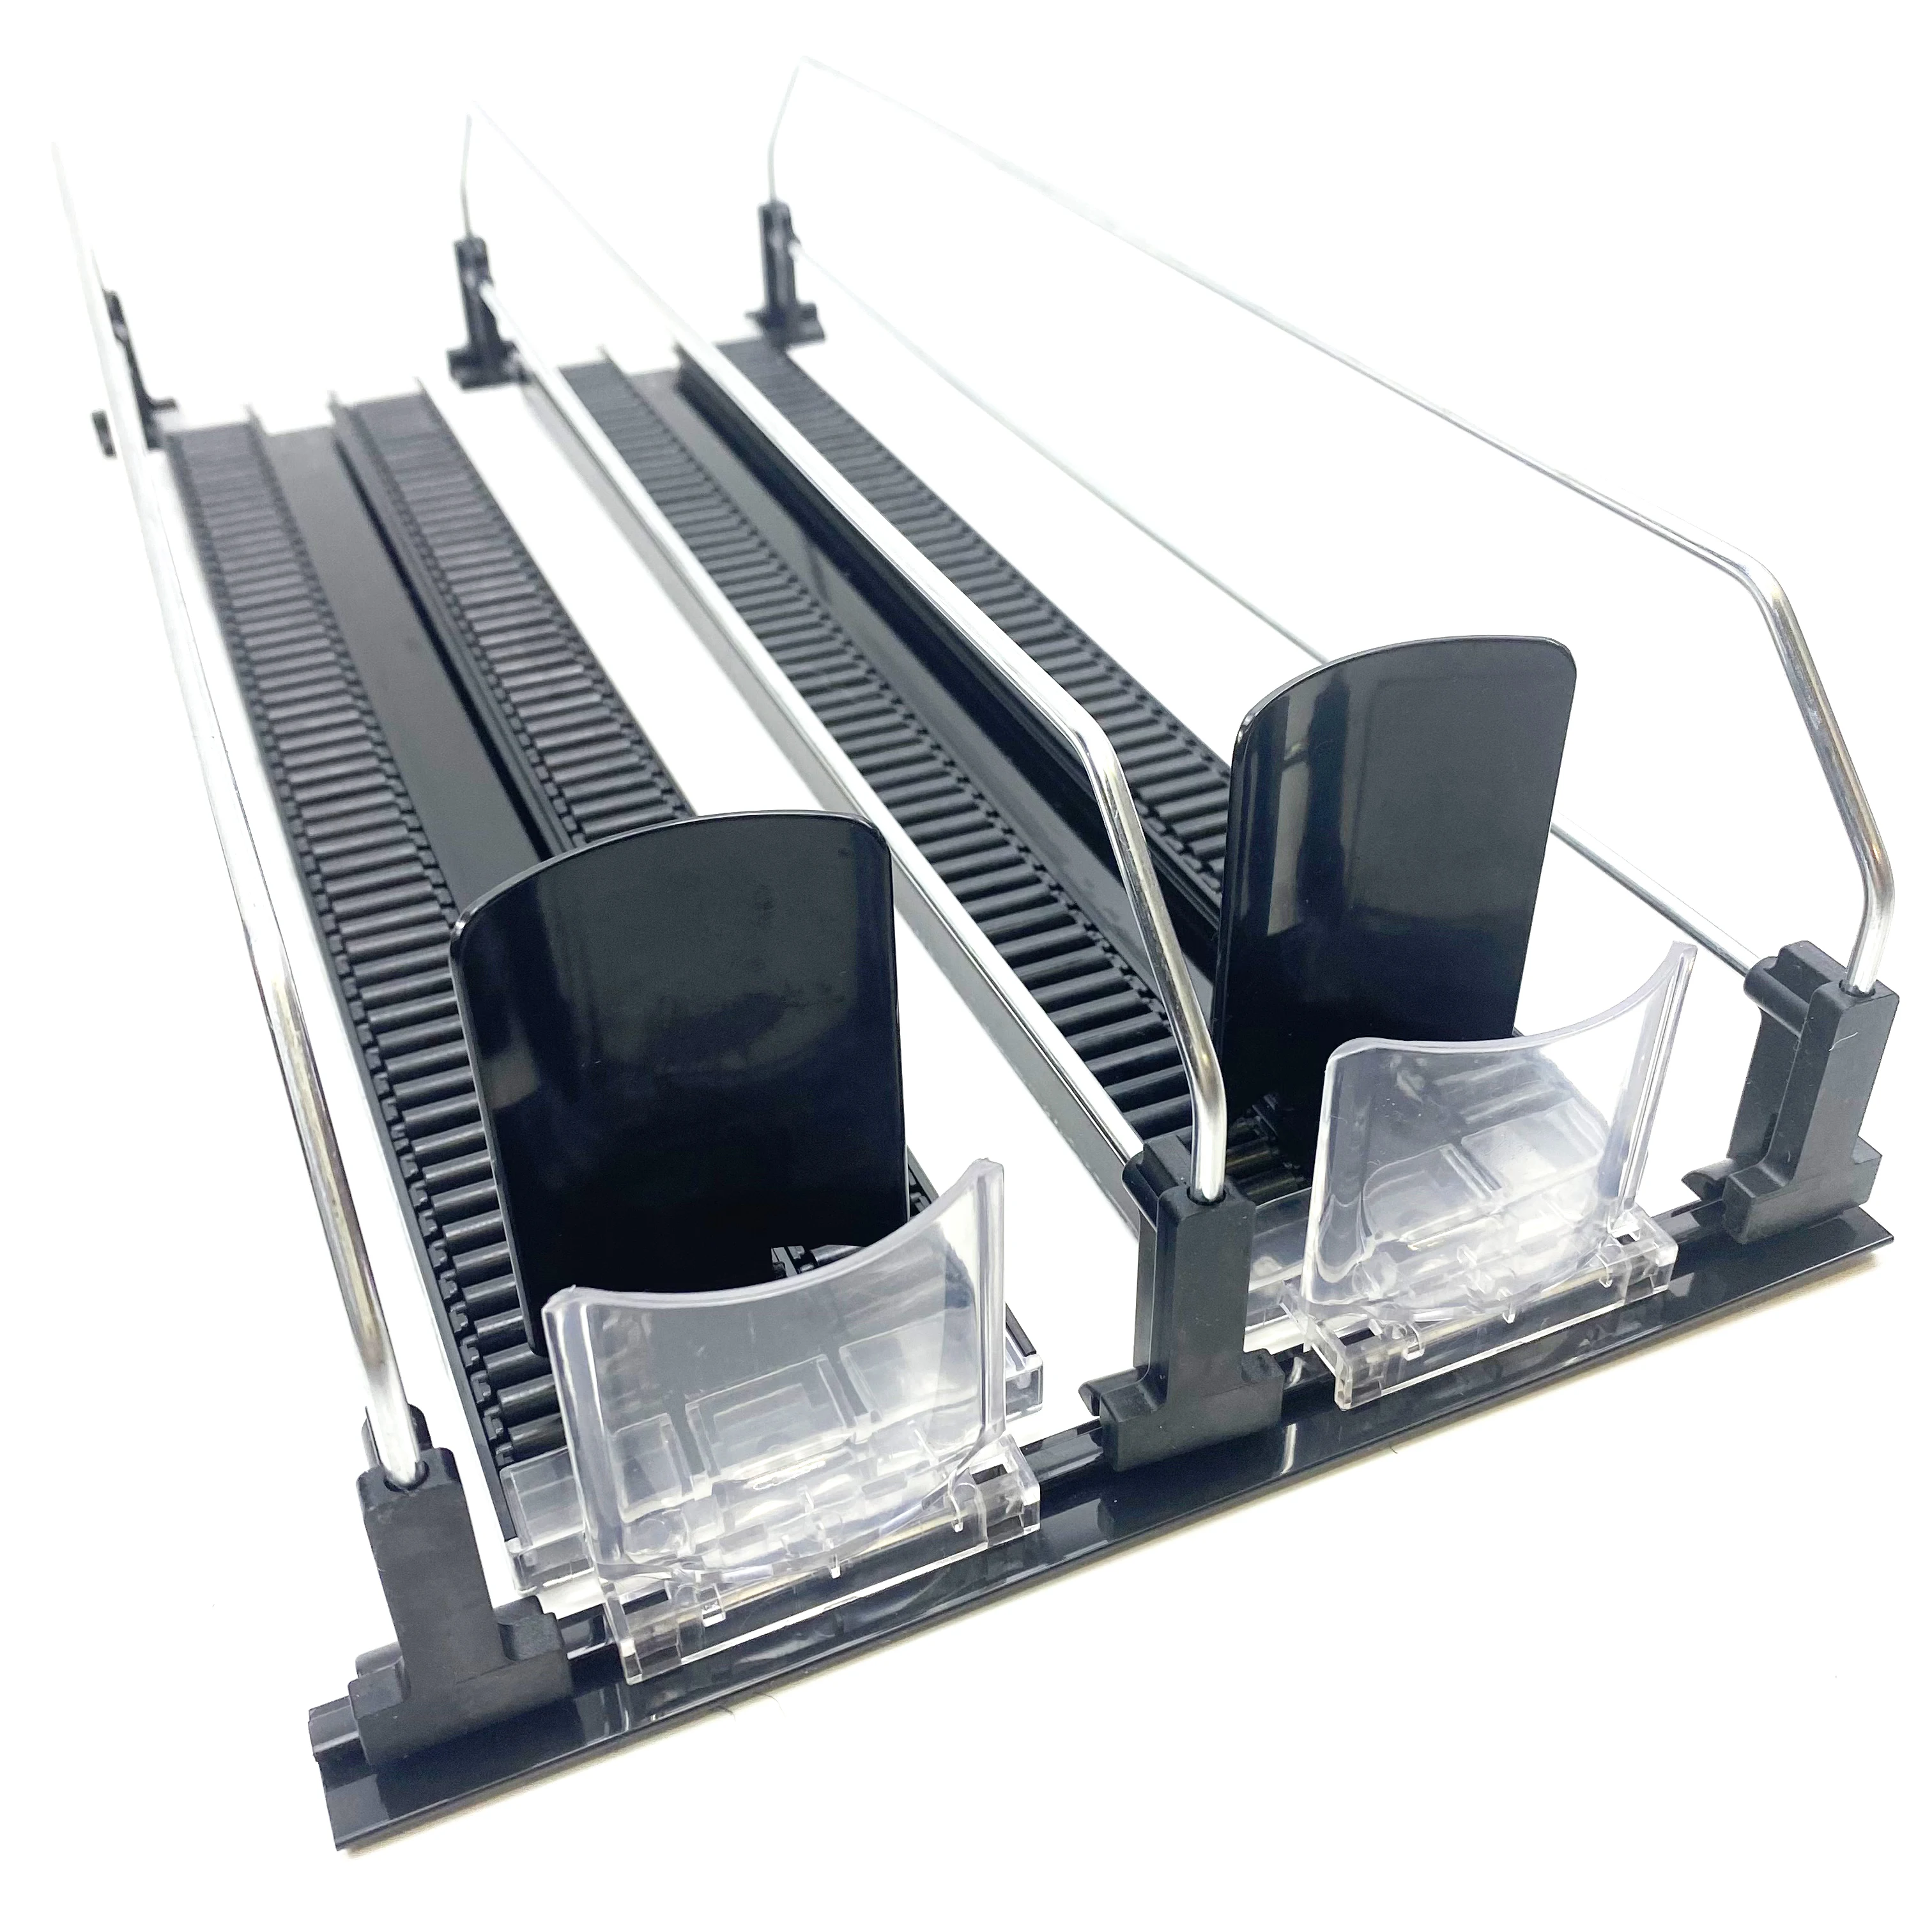 

Automatic Plastic Fridge Self Feed Management Roller Glide System Drink Bottle Spring Loaded Shelf Pusher for Supermarket